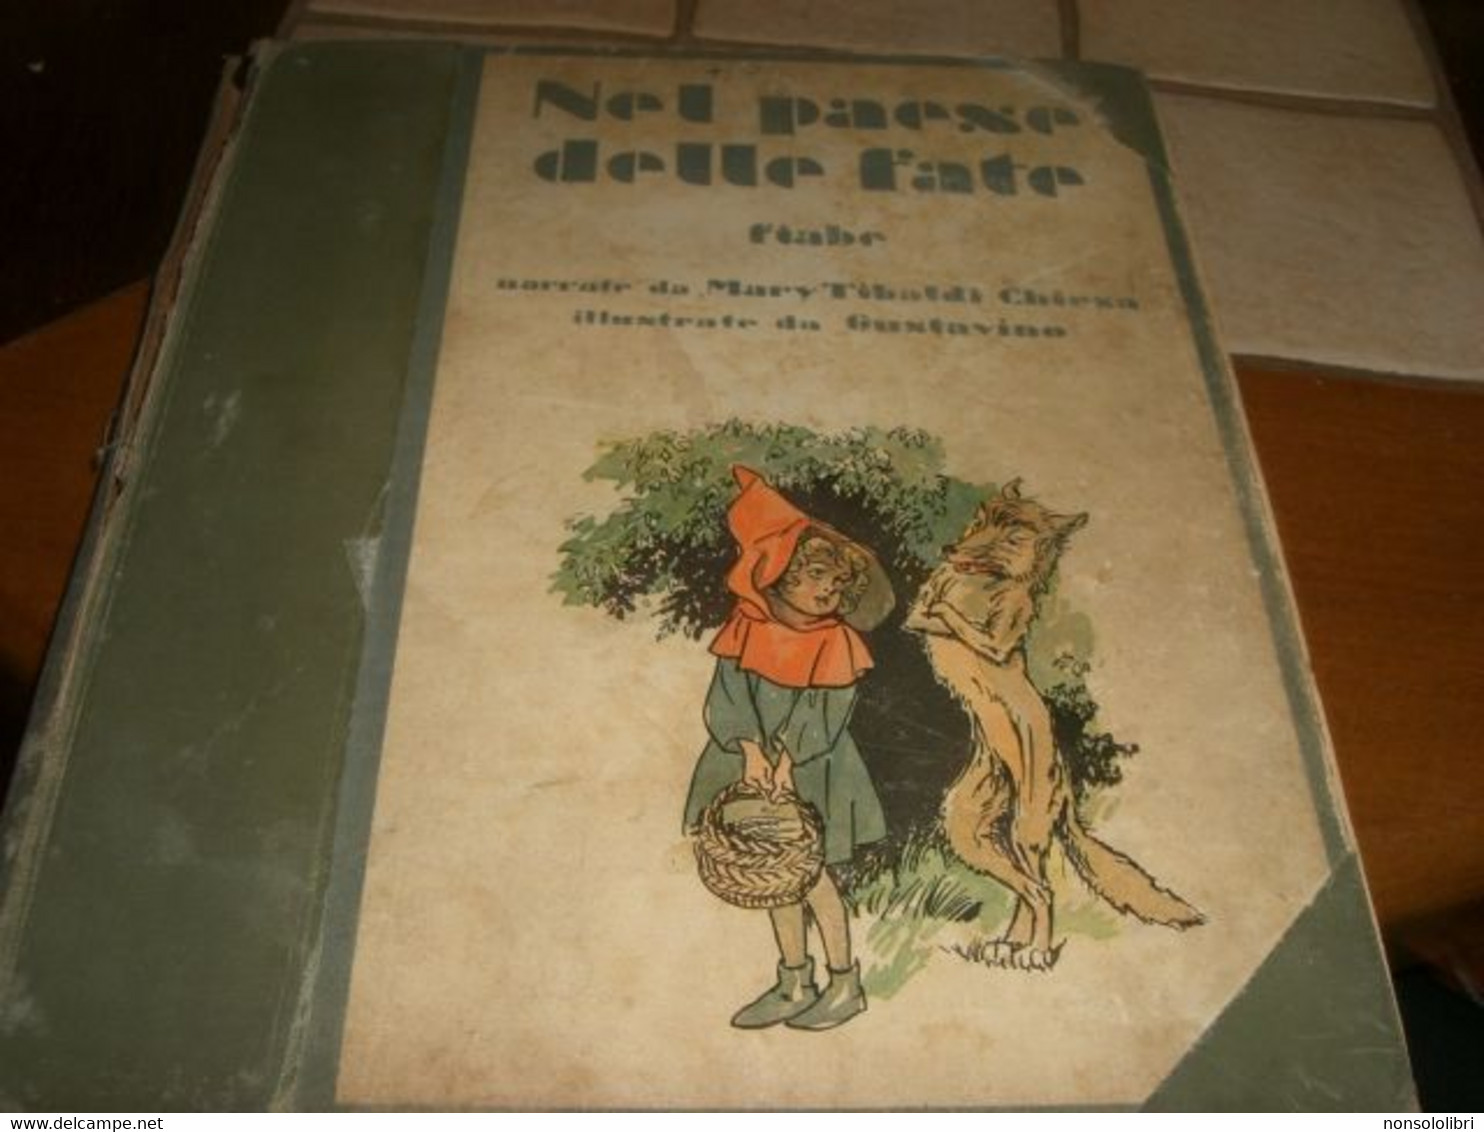 LIBRO "NEL PAESE DELLE FATE" SCALA D'ORO -ILL.GUSTAVINO 1932 SERIE I PER I RAGAZZI DI ANNI 6 N.3 - Tales & Short Stories